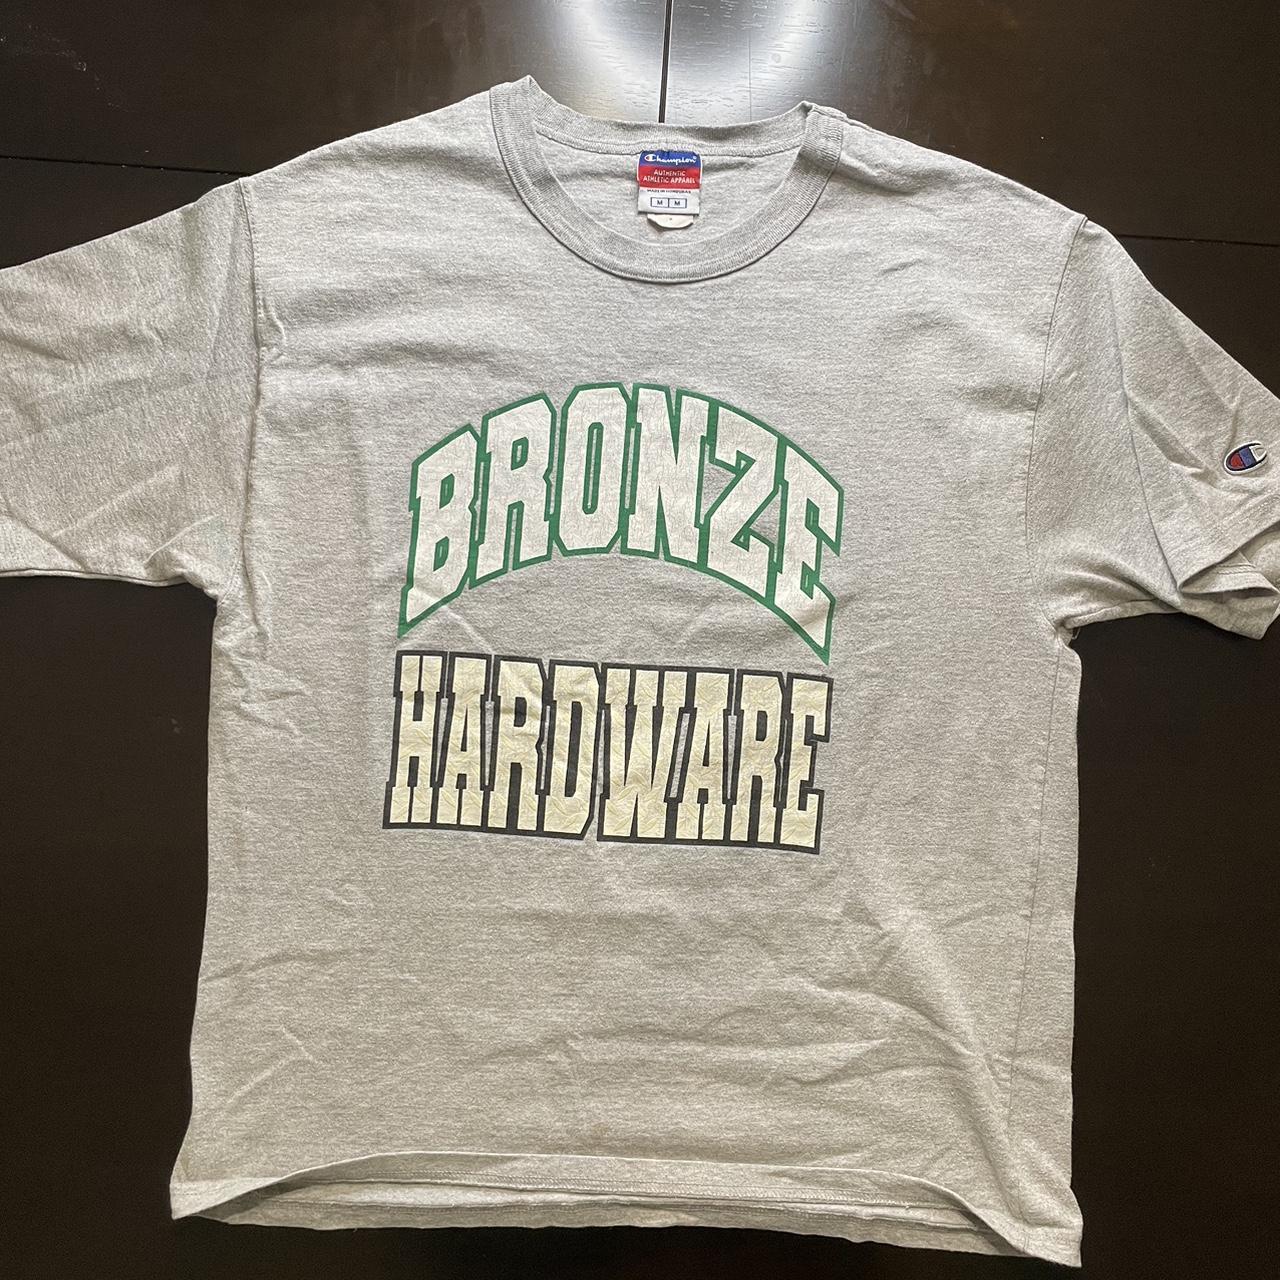 Bronze 56K Men's T-shirt